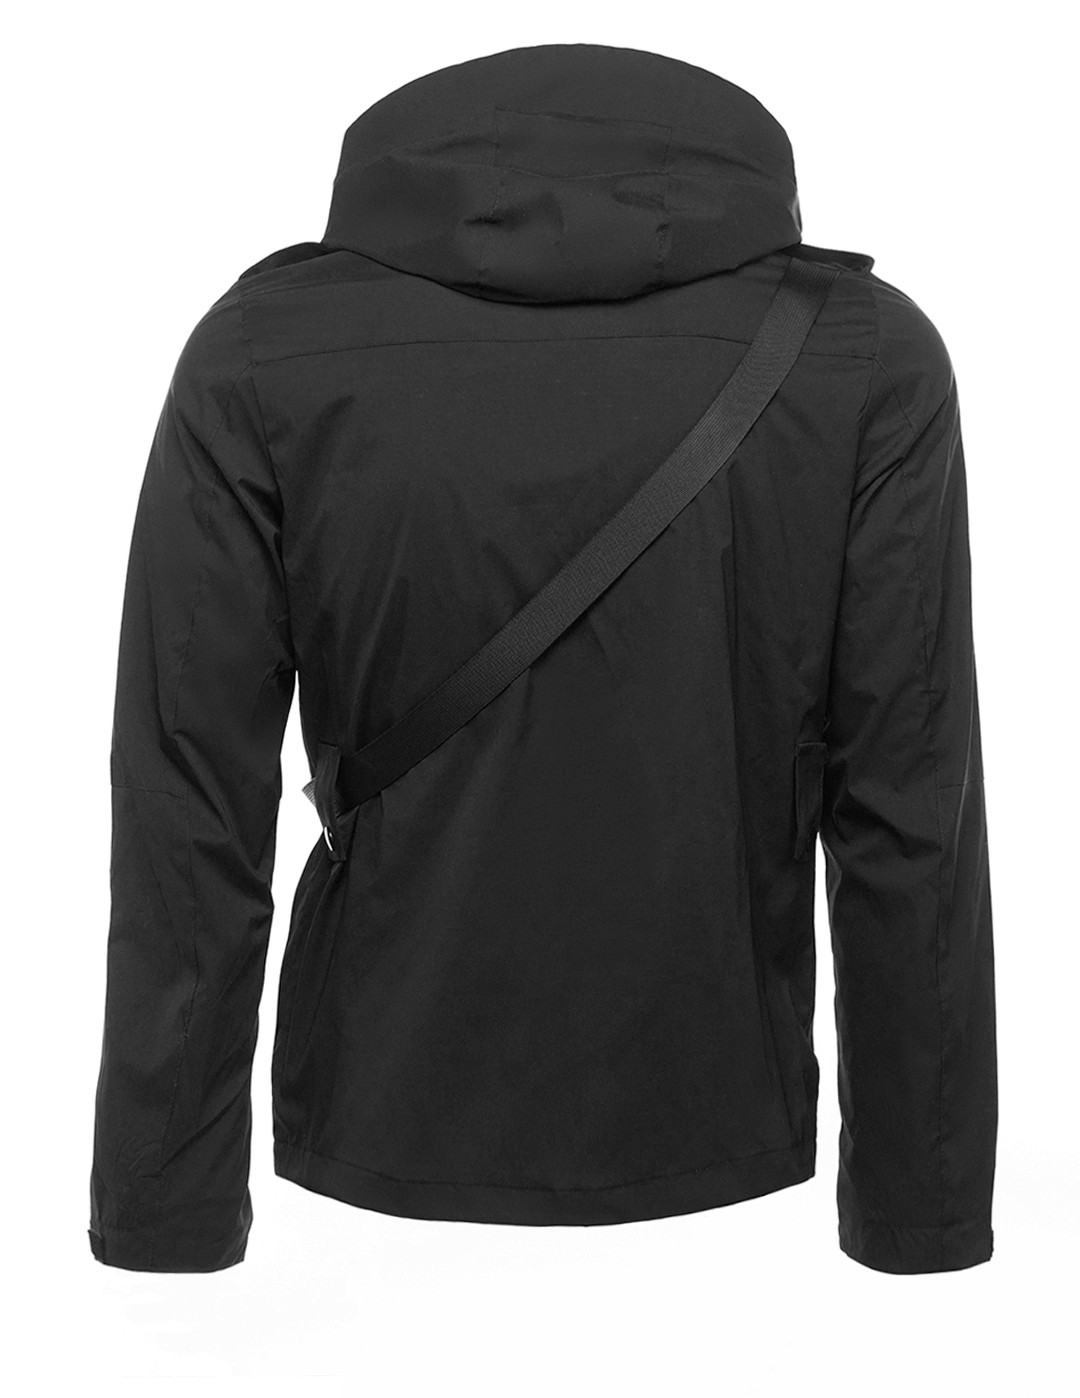 REDBAG Jacket Quattrocolori Edition Black